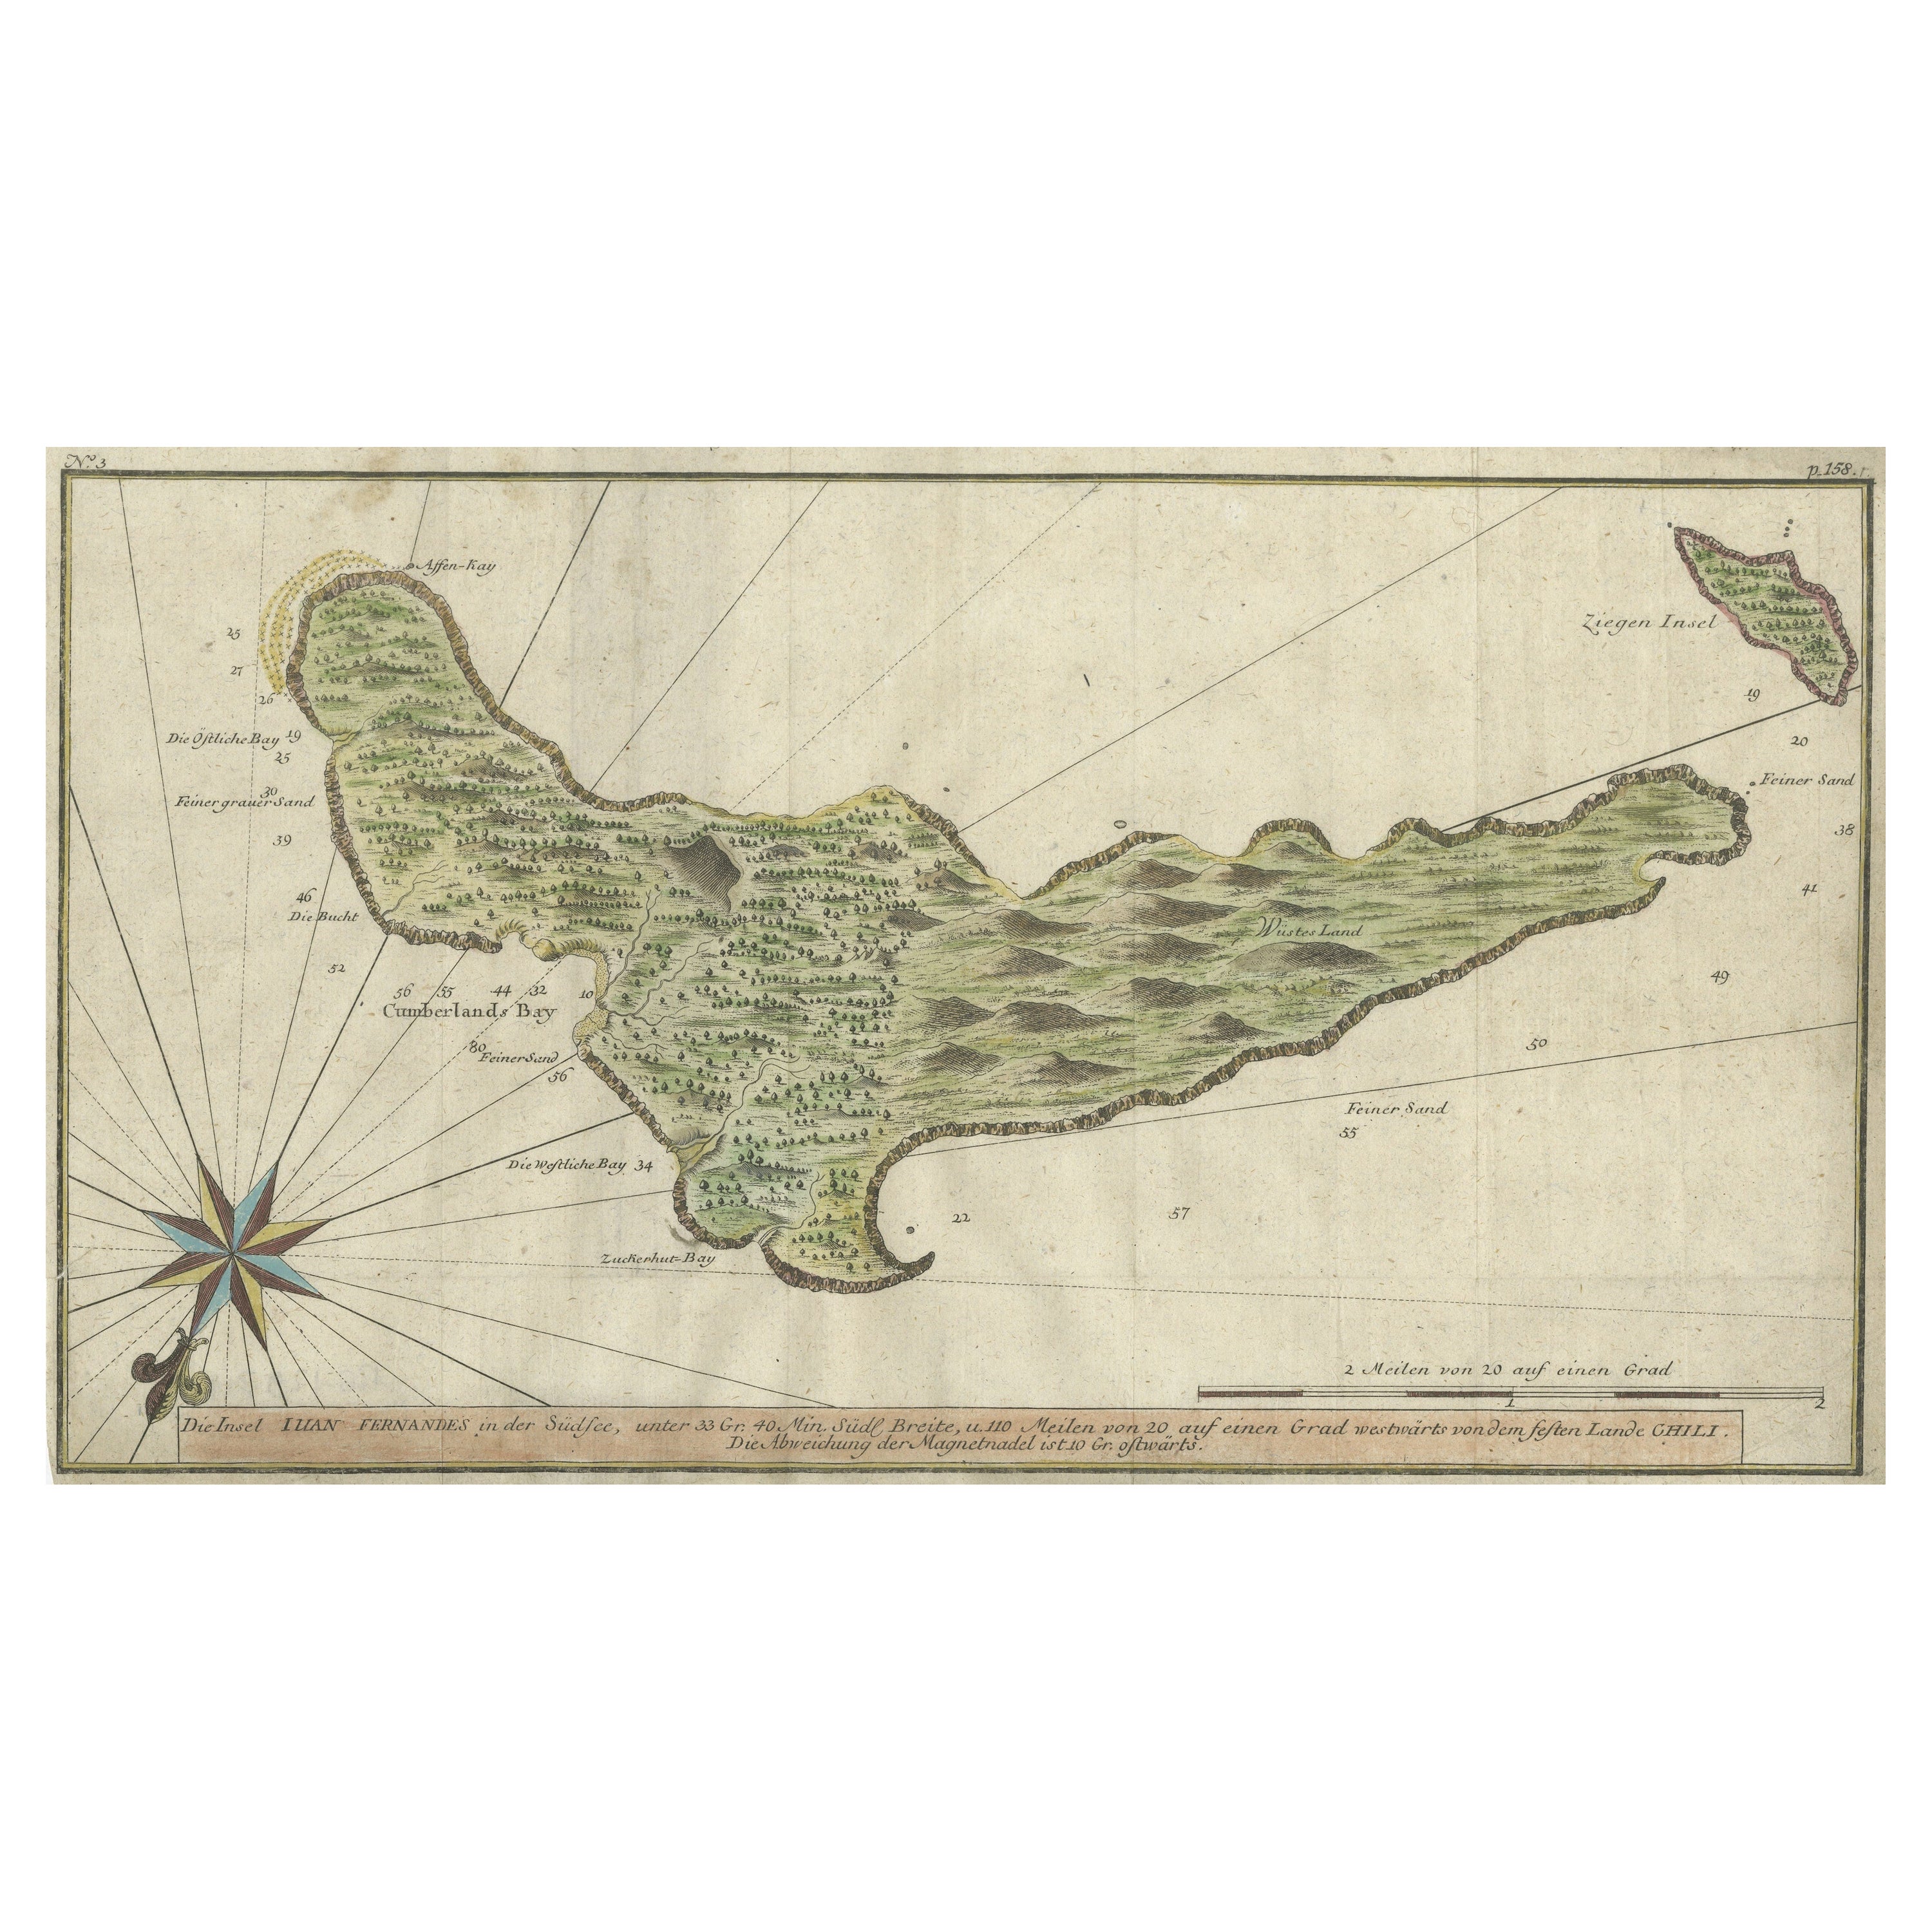 Rare Handcolored Map of Isle de Juan Fernandes 'Robinson Crusoe Island', Chili For Sale